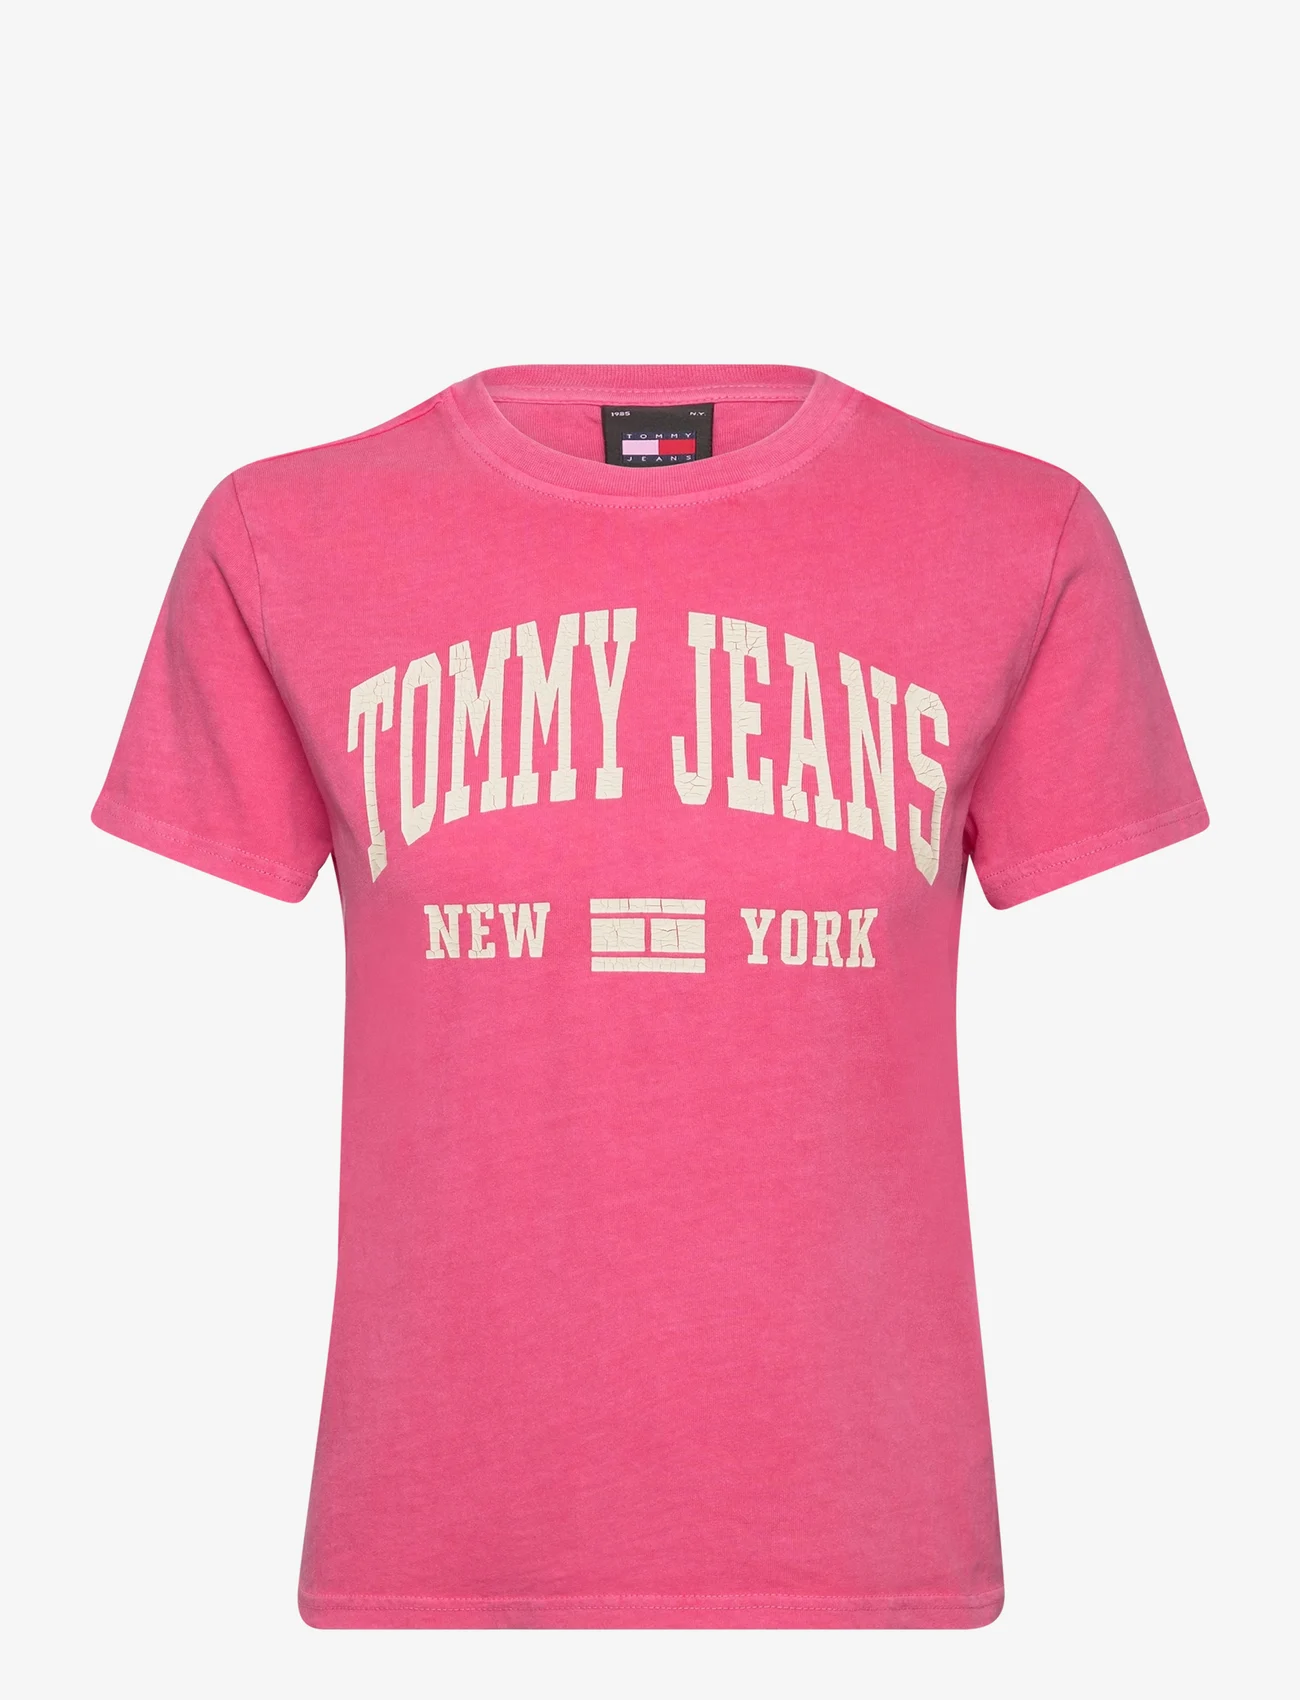 Tommy Jeans - TJW REG WASHED VARSITY TEE EXT - zemākās cenas - pink alert - 0